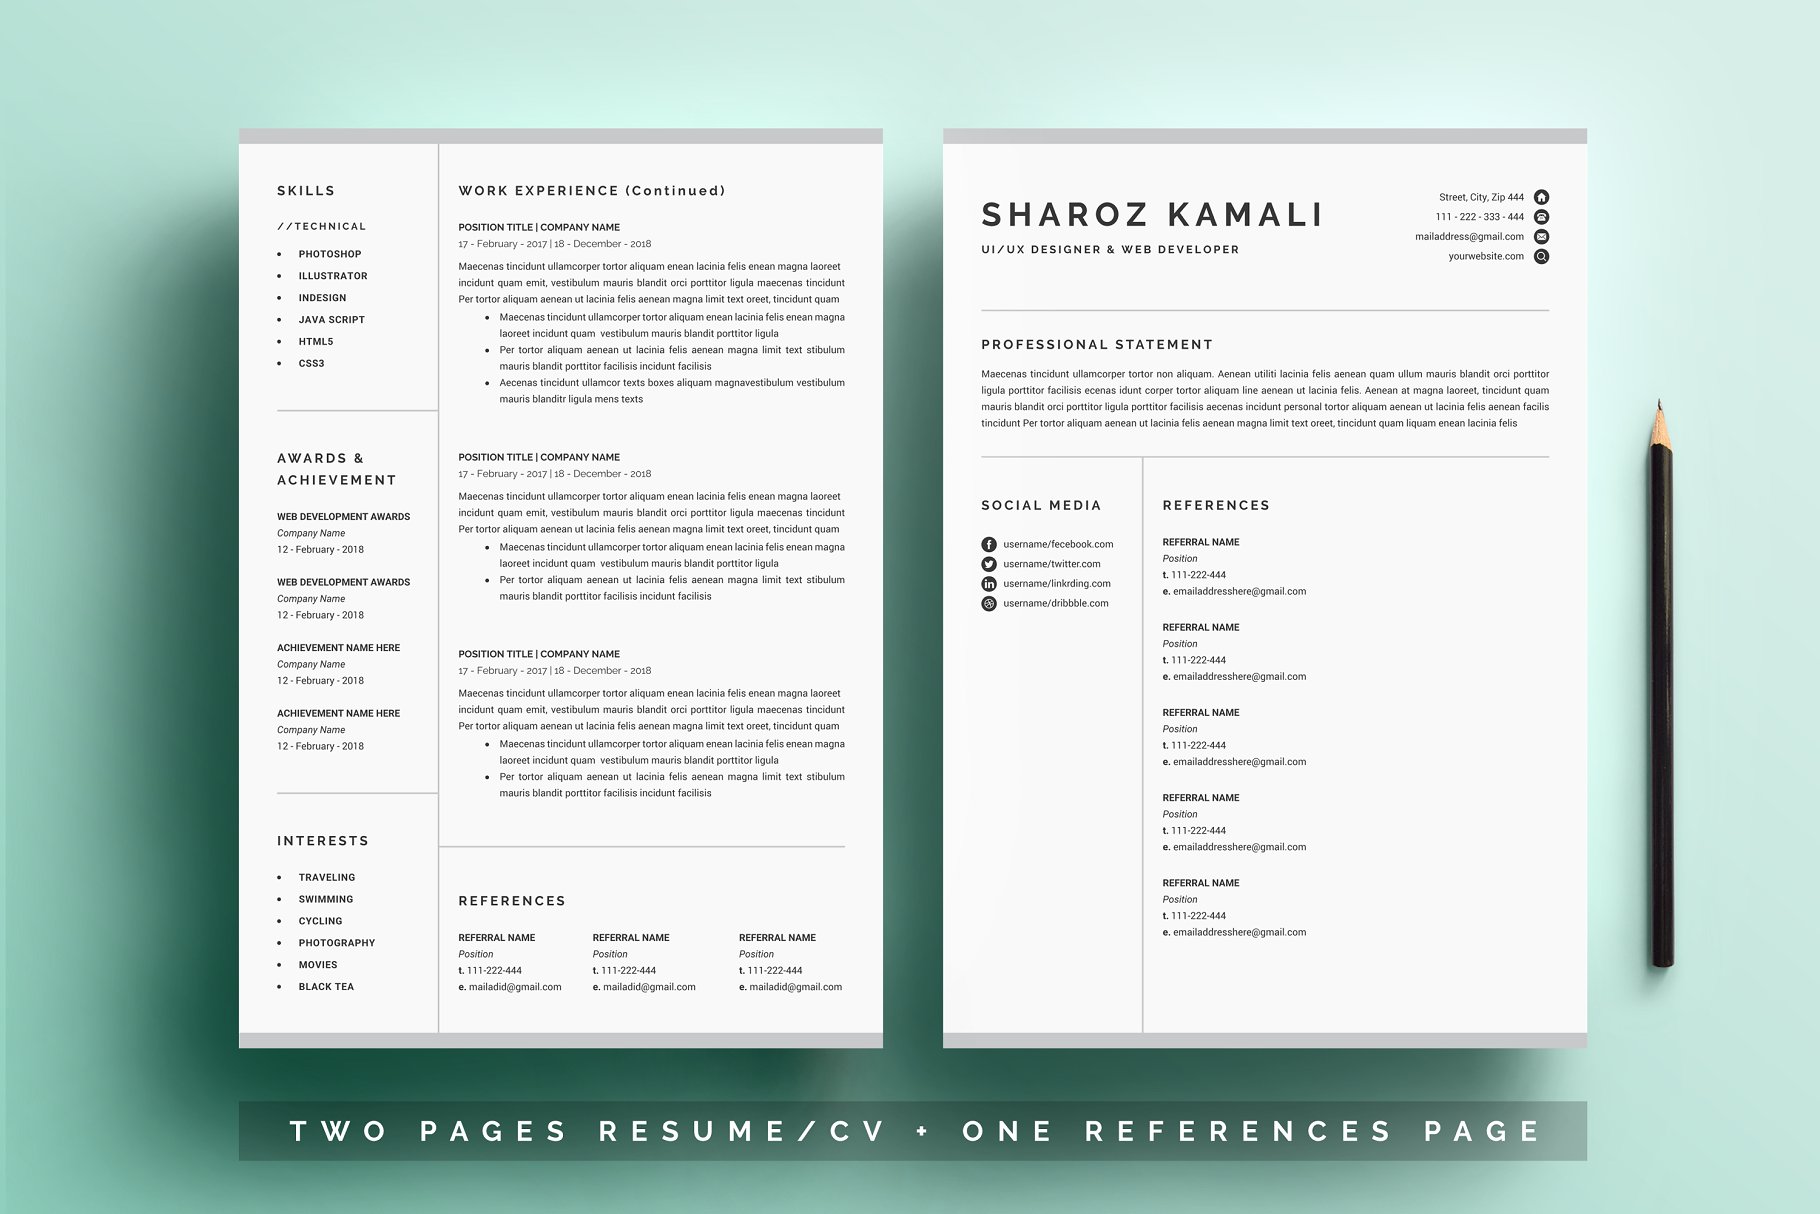 一份4页清爽明了的简历模板 Resume/CV Template 4 Pages Pack插图2